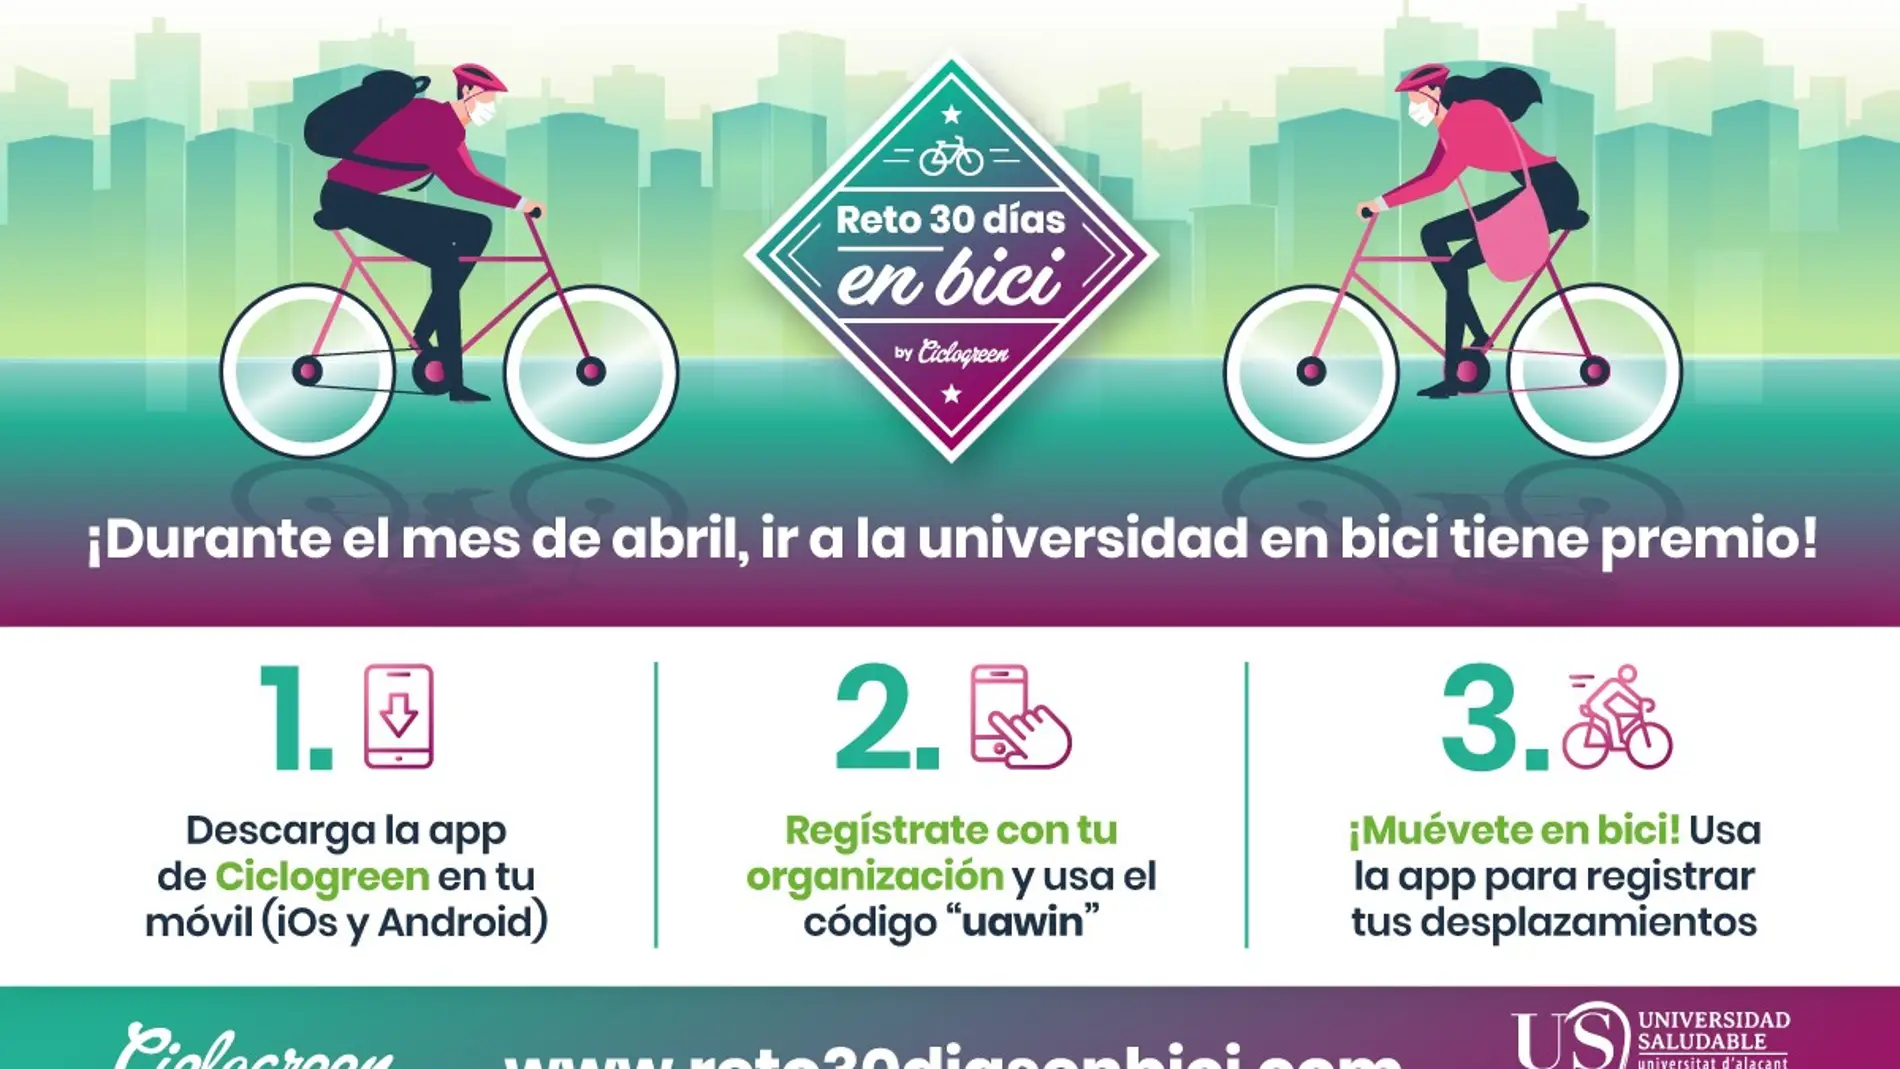 Cartel 'Reto 30 días' en bici